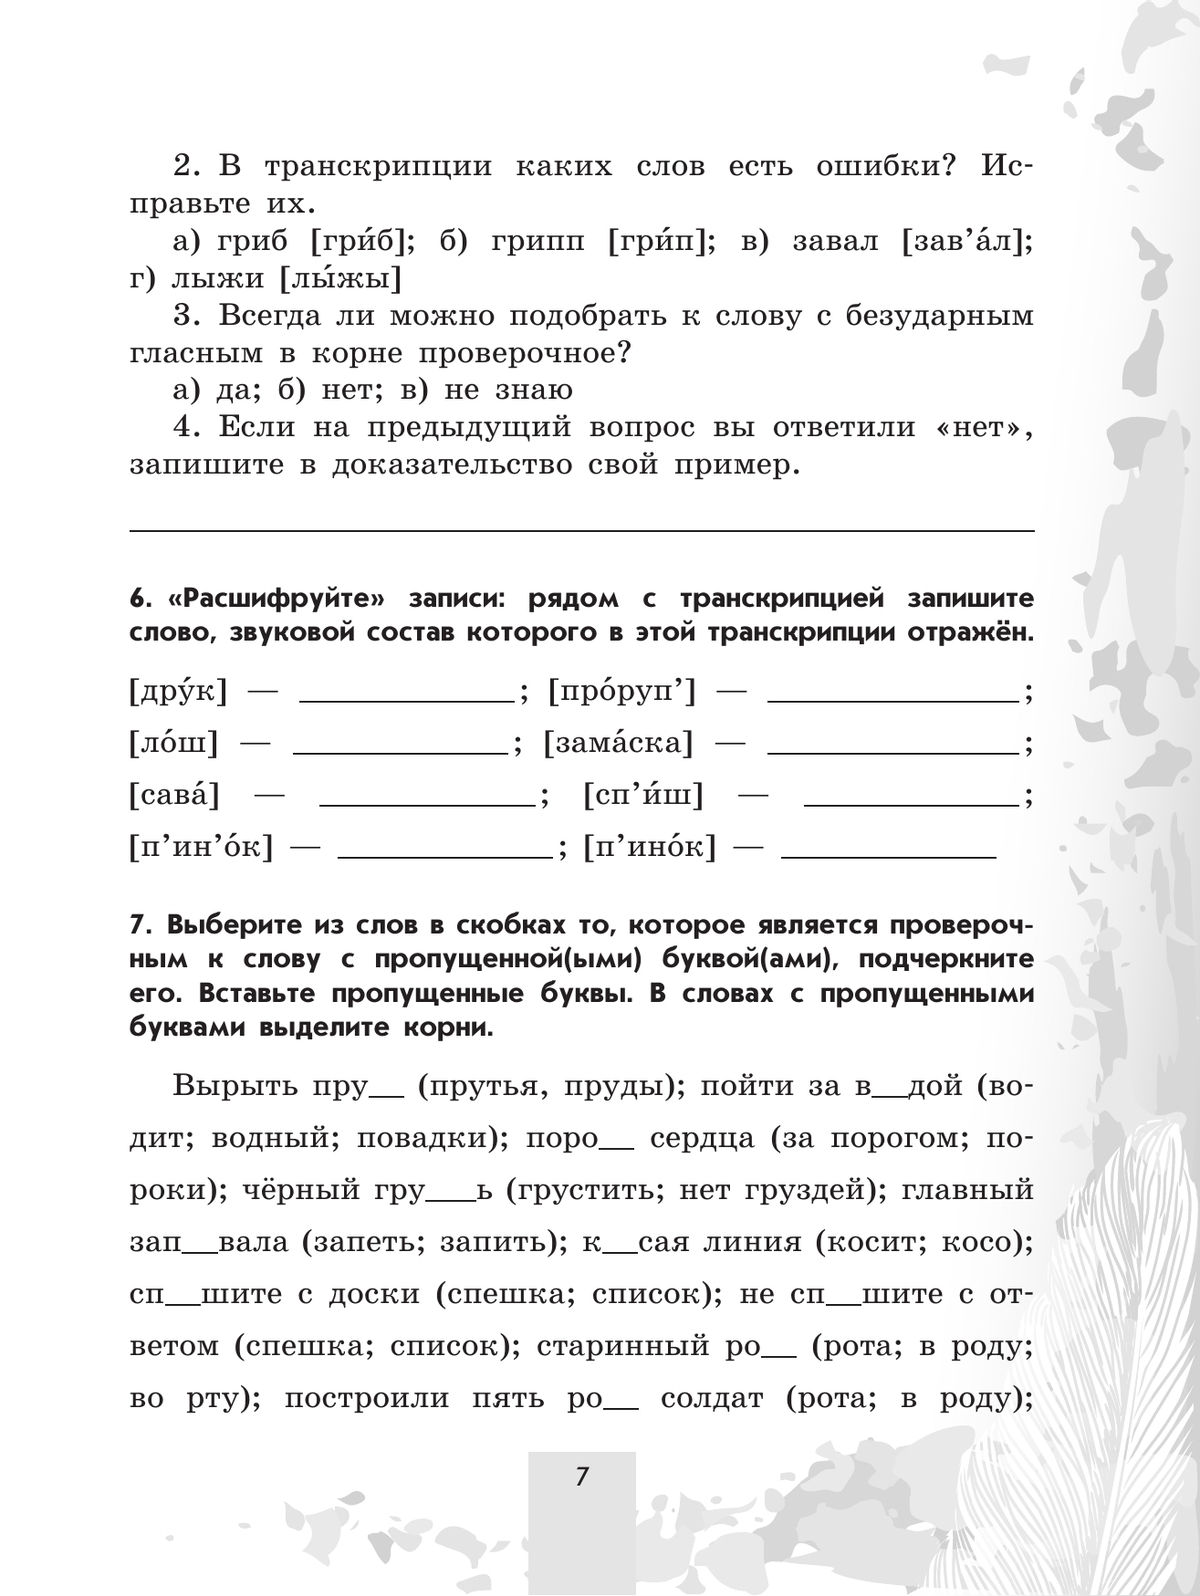 Русский язык. 5 класс. Рабочая тетрадь. В 2 частях. Часть 1 5